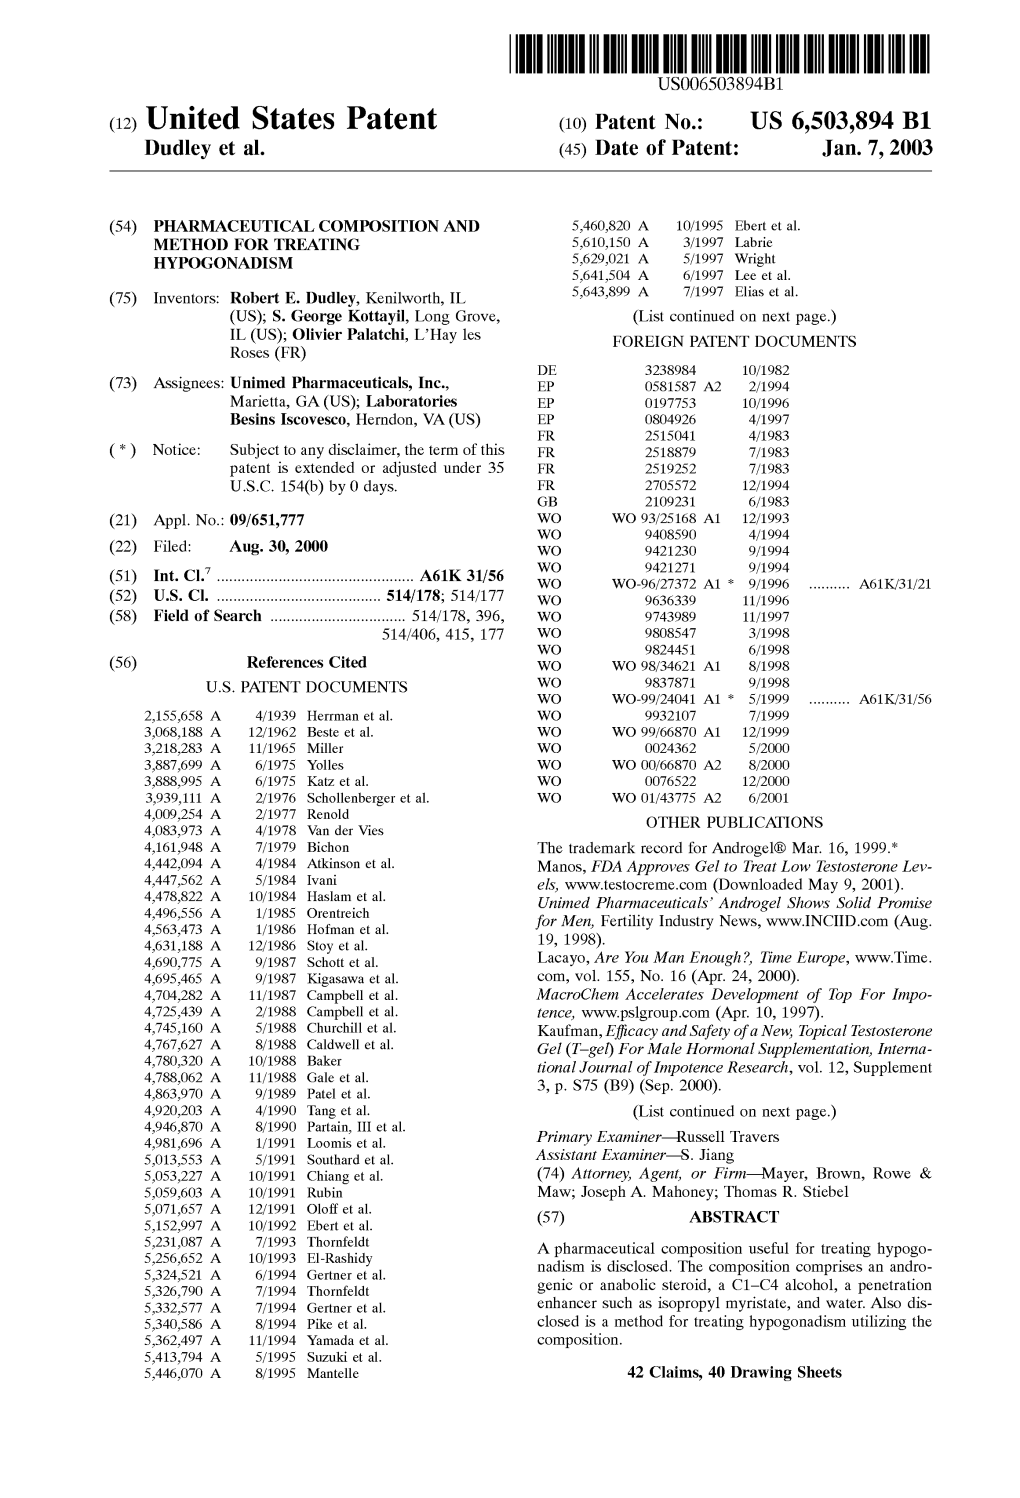 (12) United States Patent (10) Patent No.: US 6,503,894 B1 Dudley Et Al